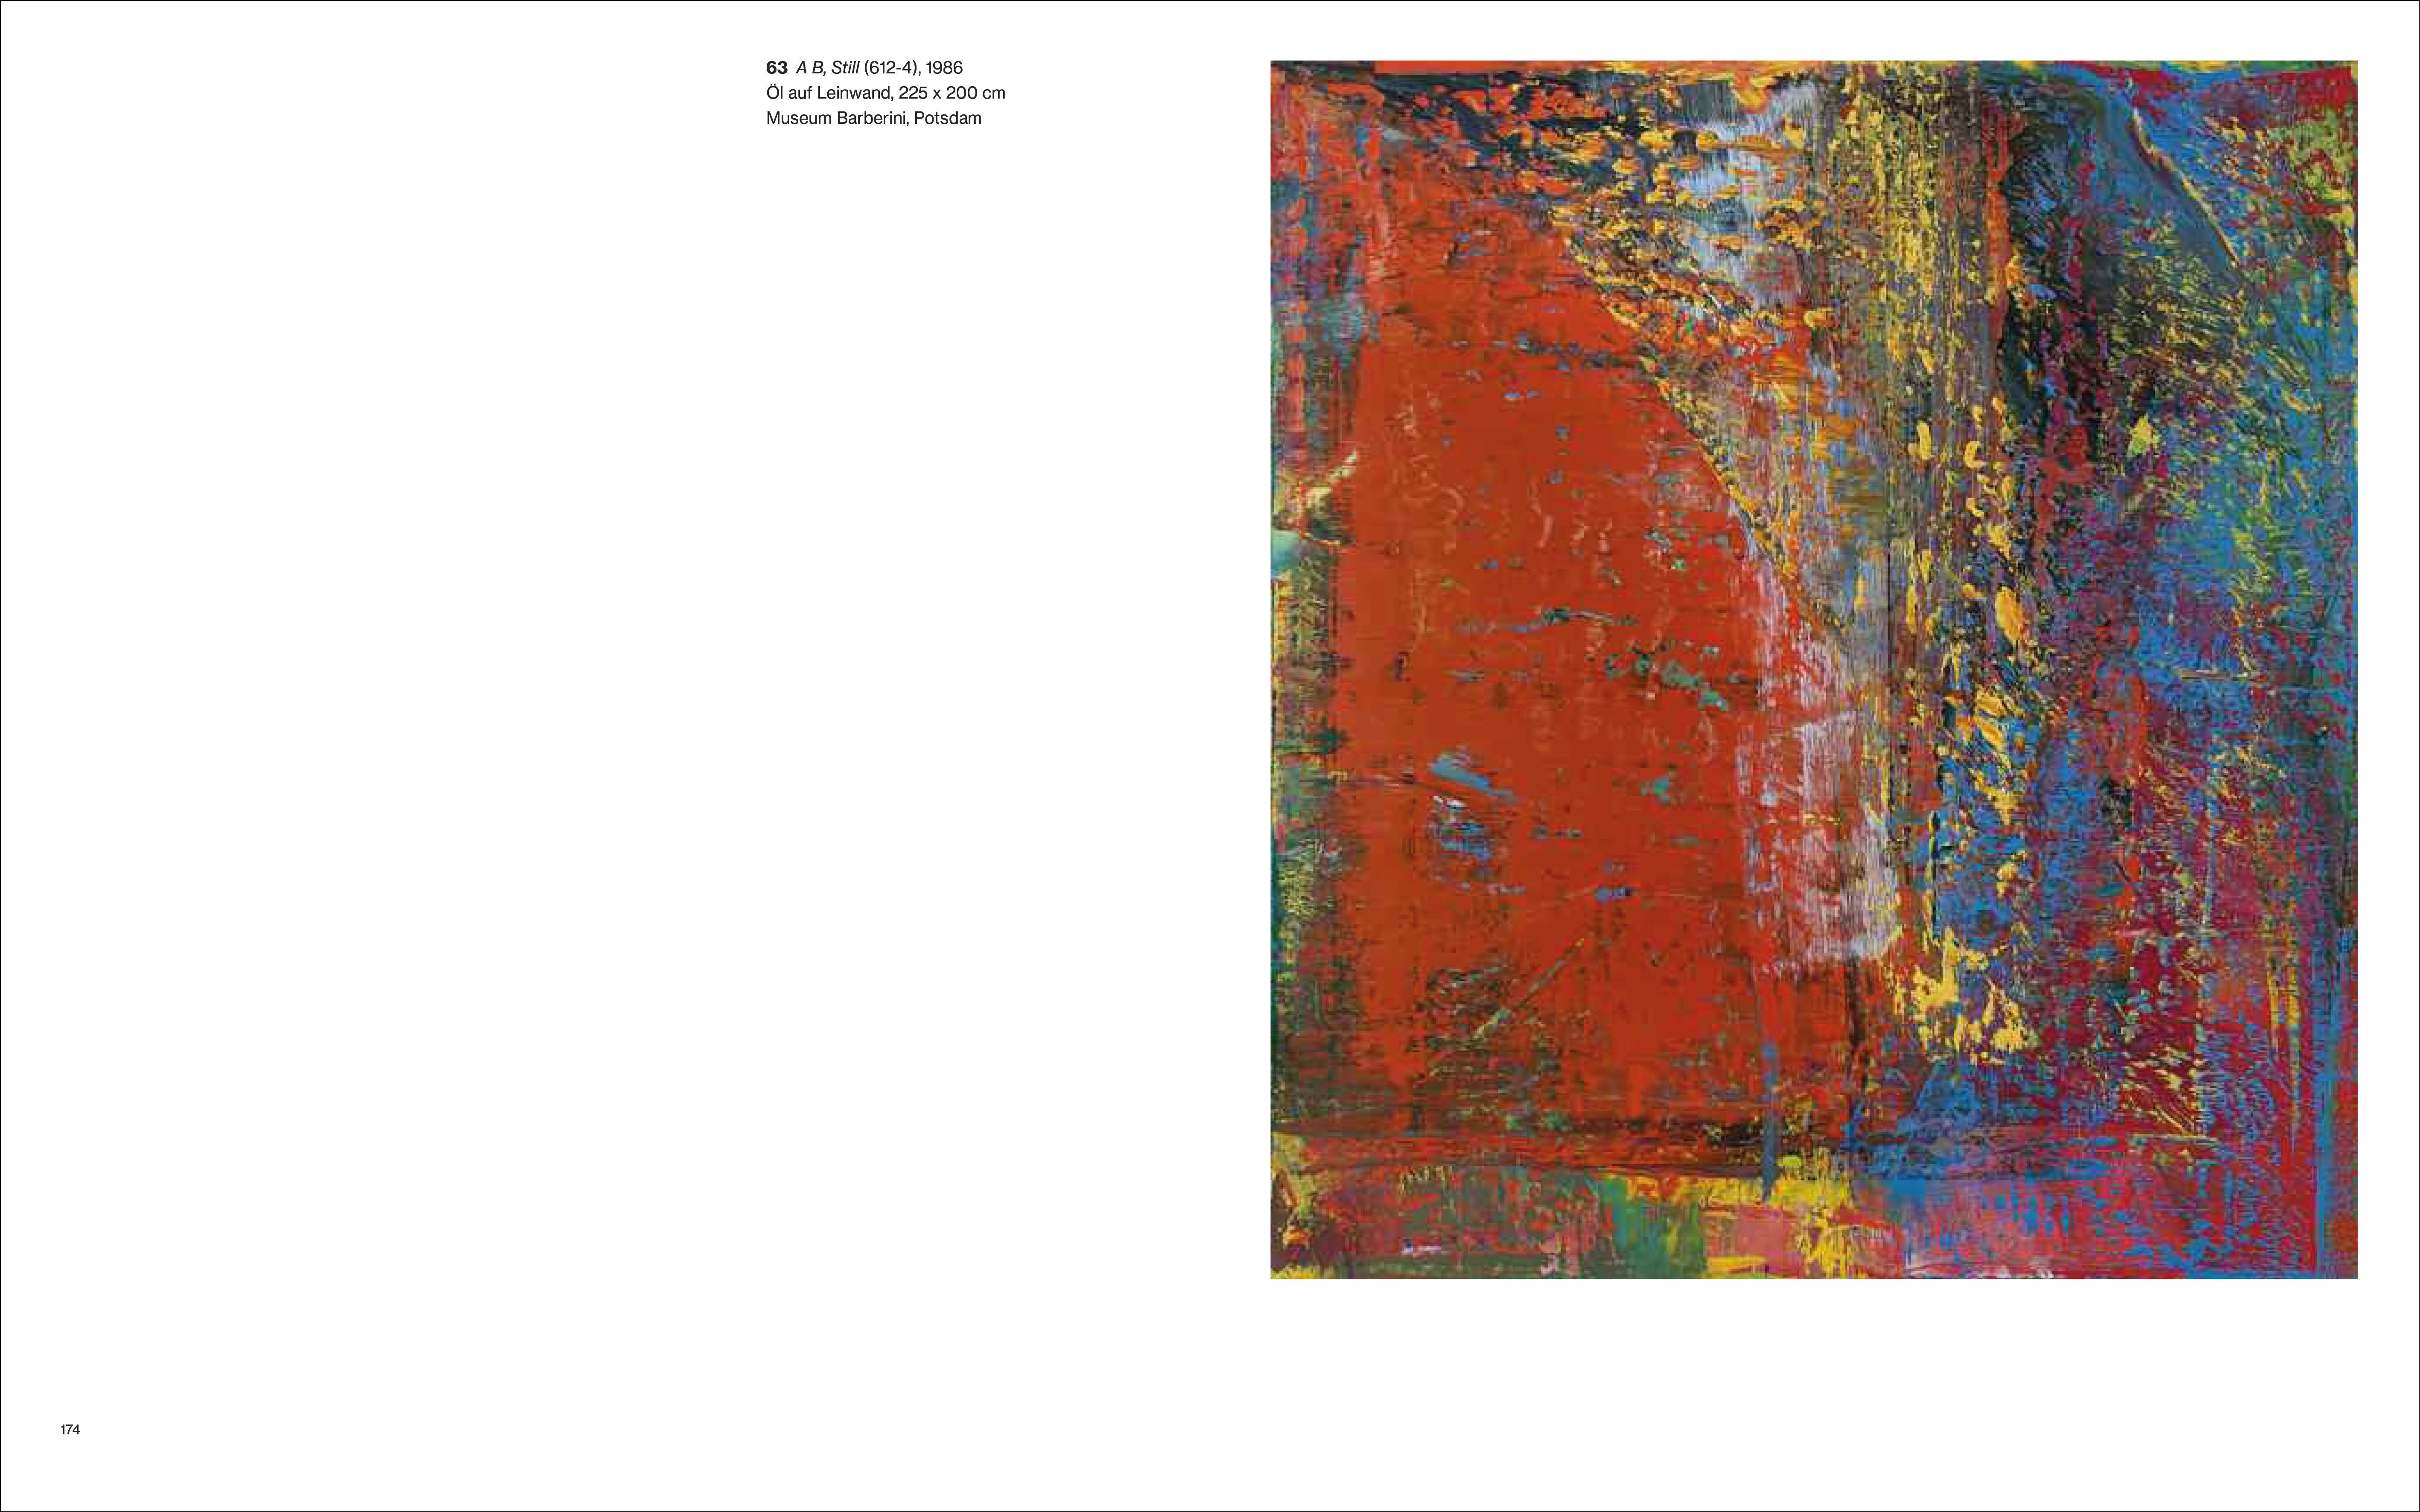  Gerhard Richter  | Abstraktion - Hardcover (2023)